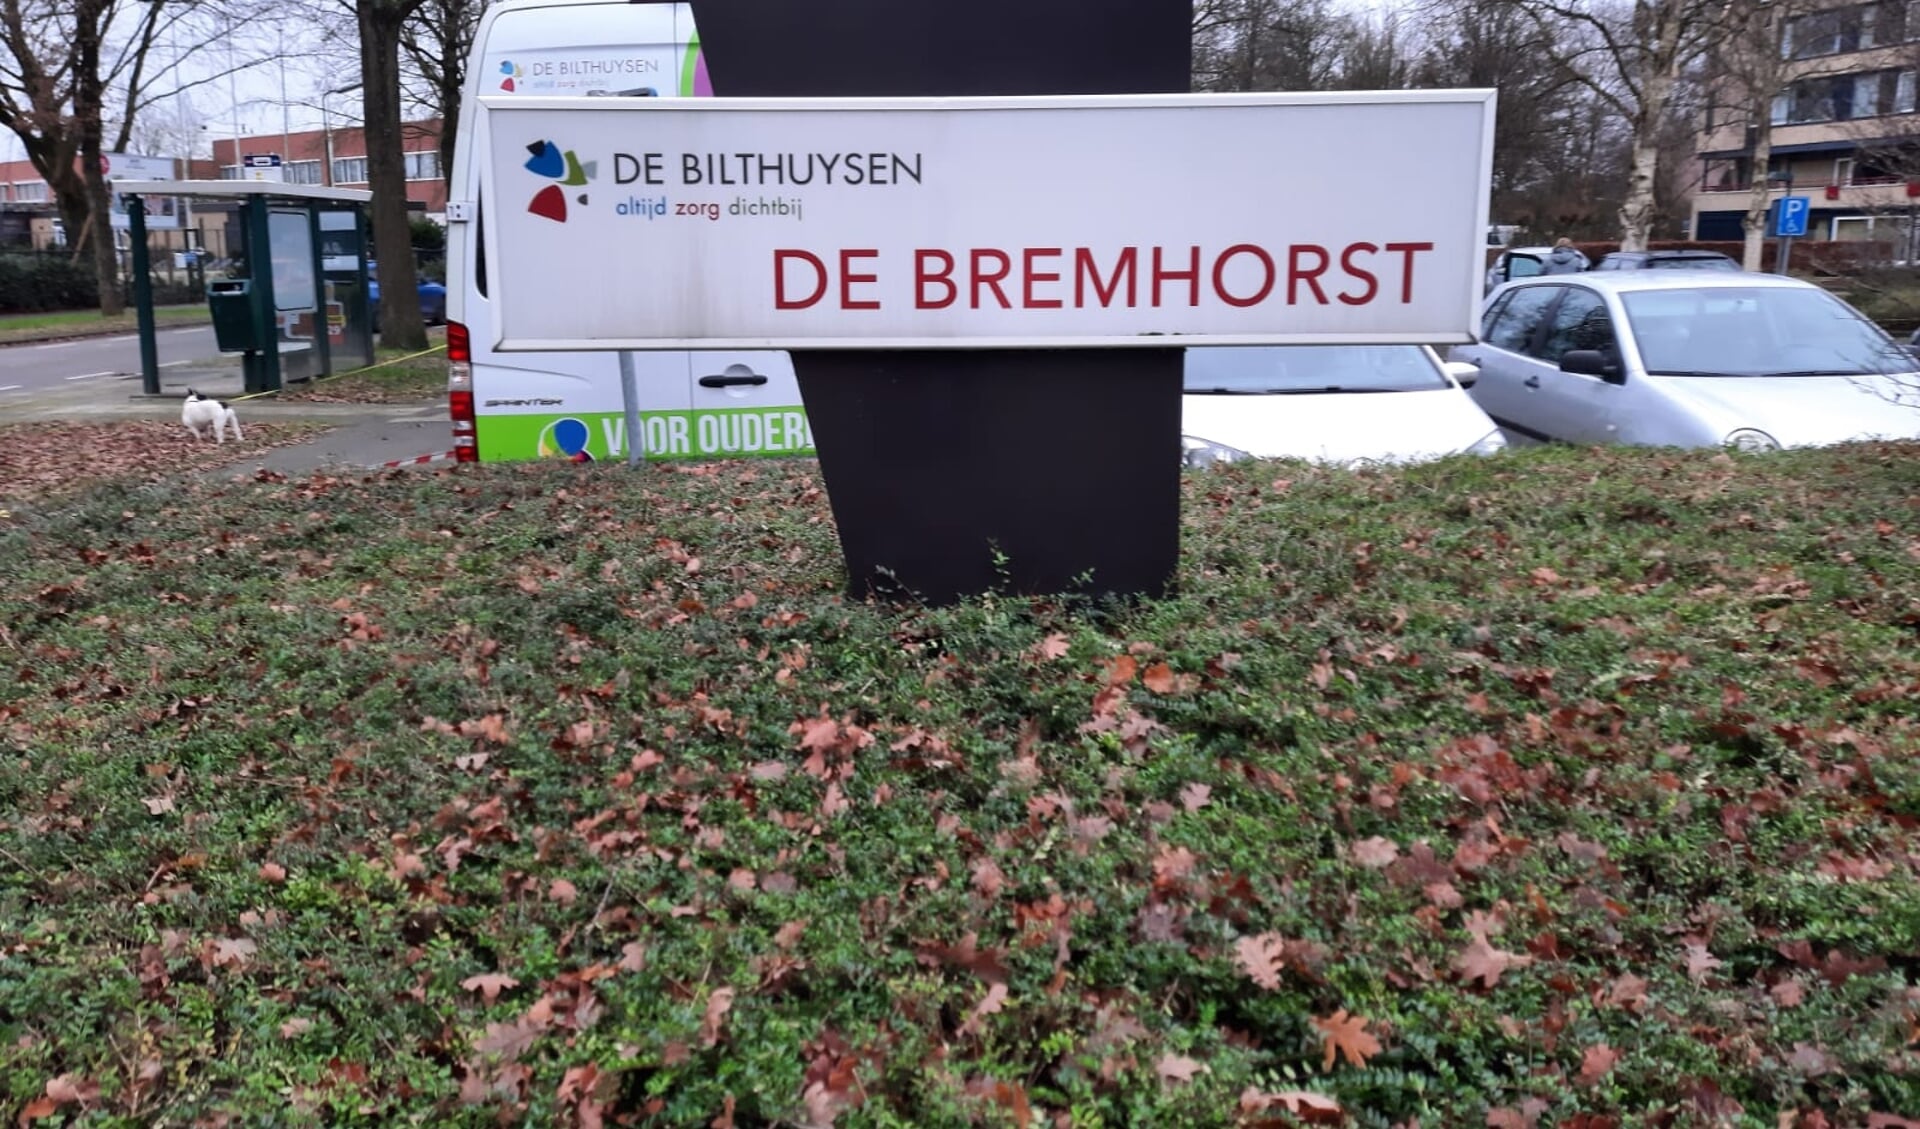 De Bilthuysen is gevestigd in het gebouw van De Bremhorst.